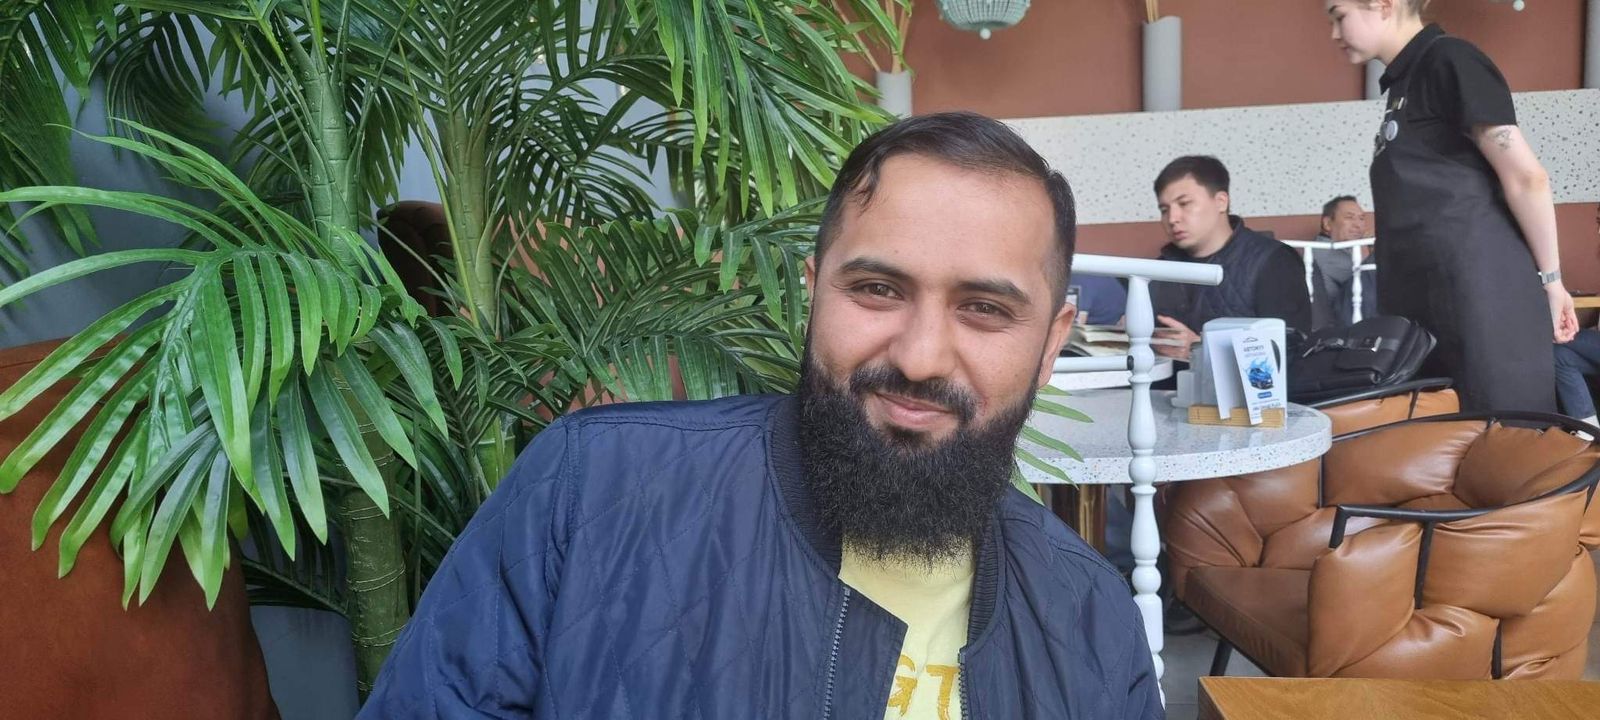 Малик Купар из Пакистана: «Мне предложили секс за 5 тысяч тенге»